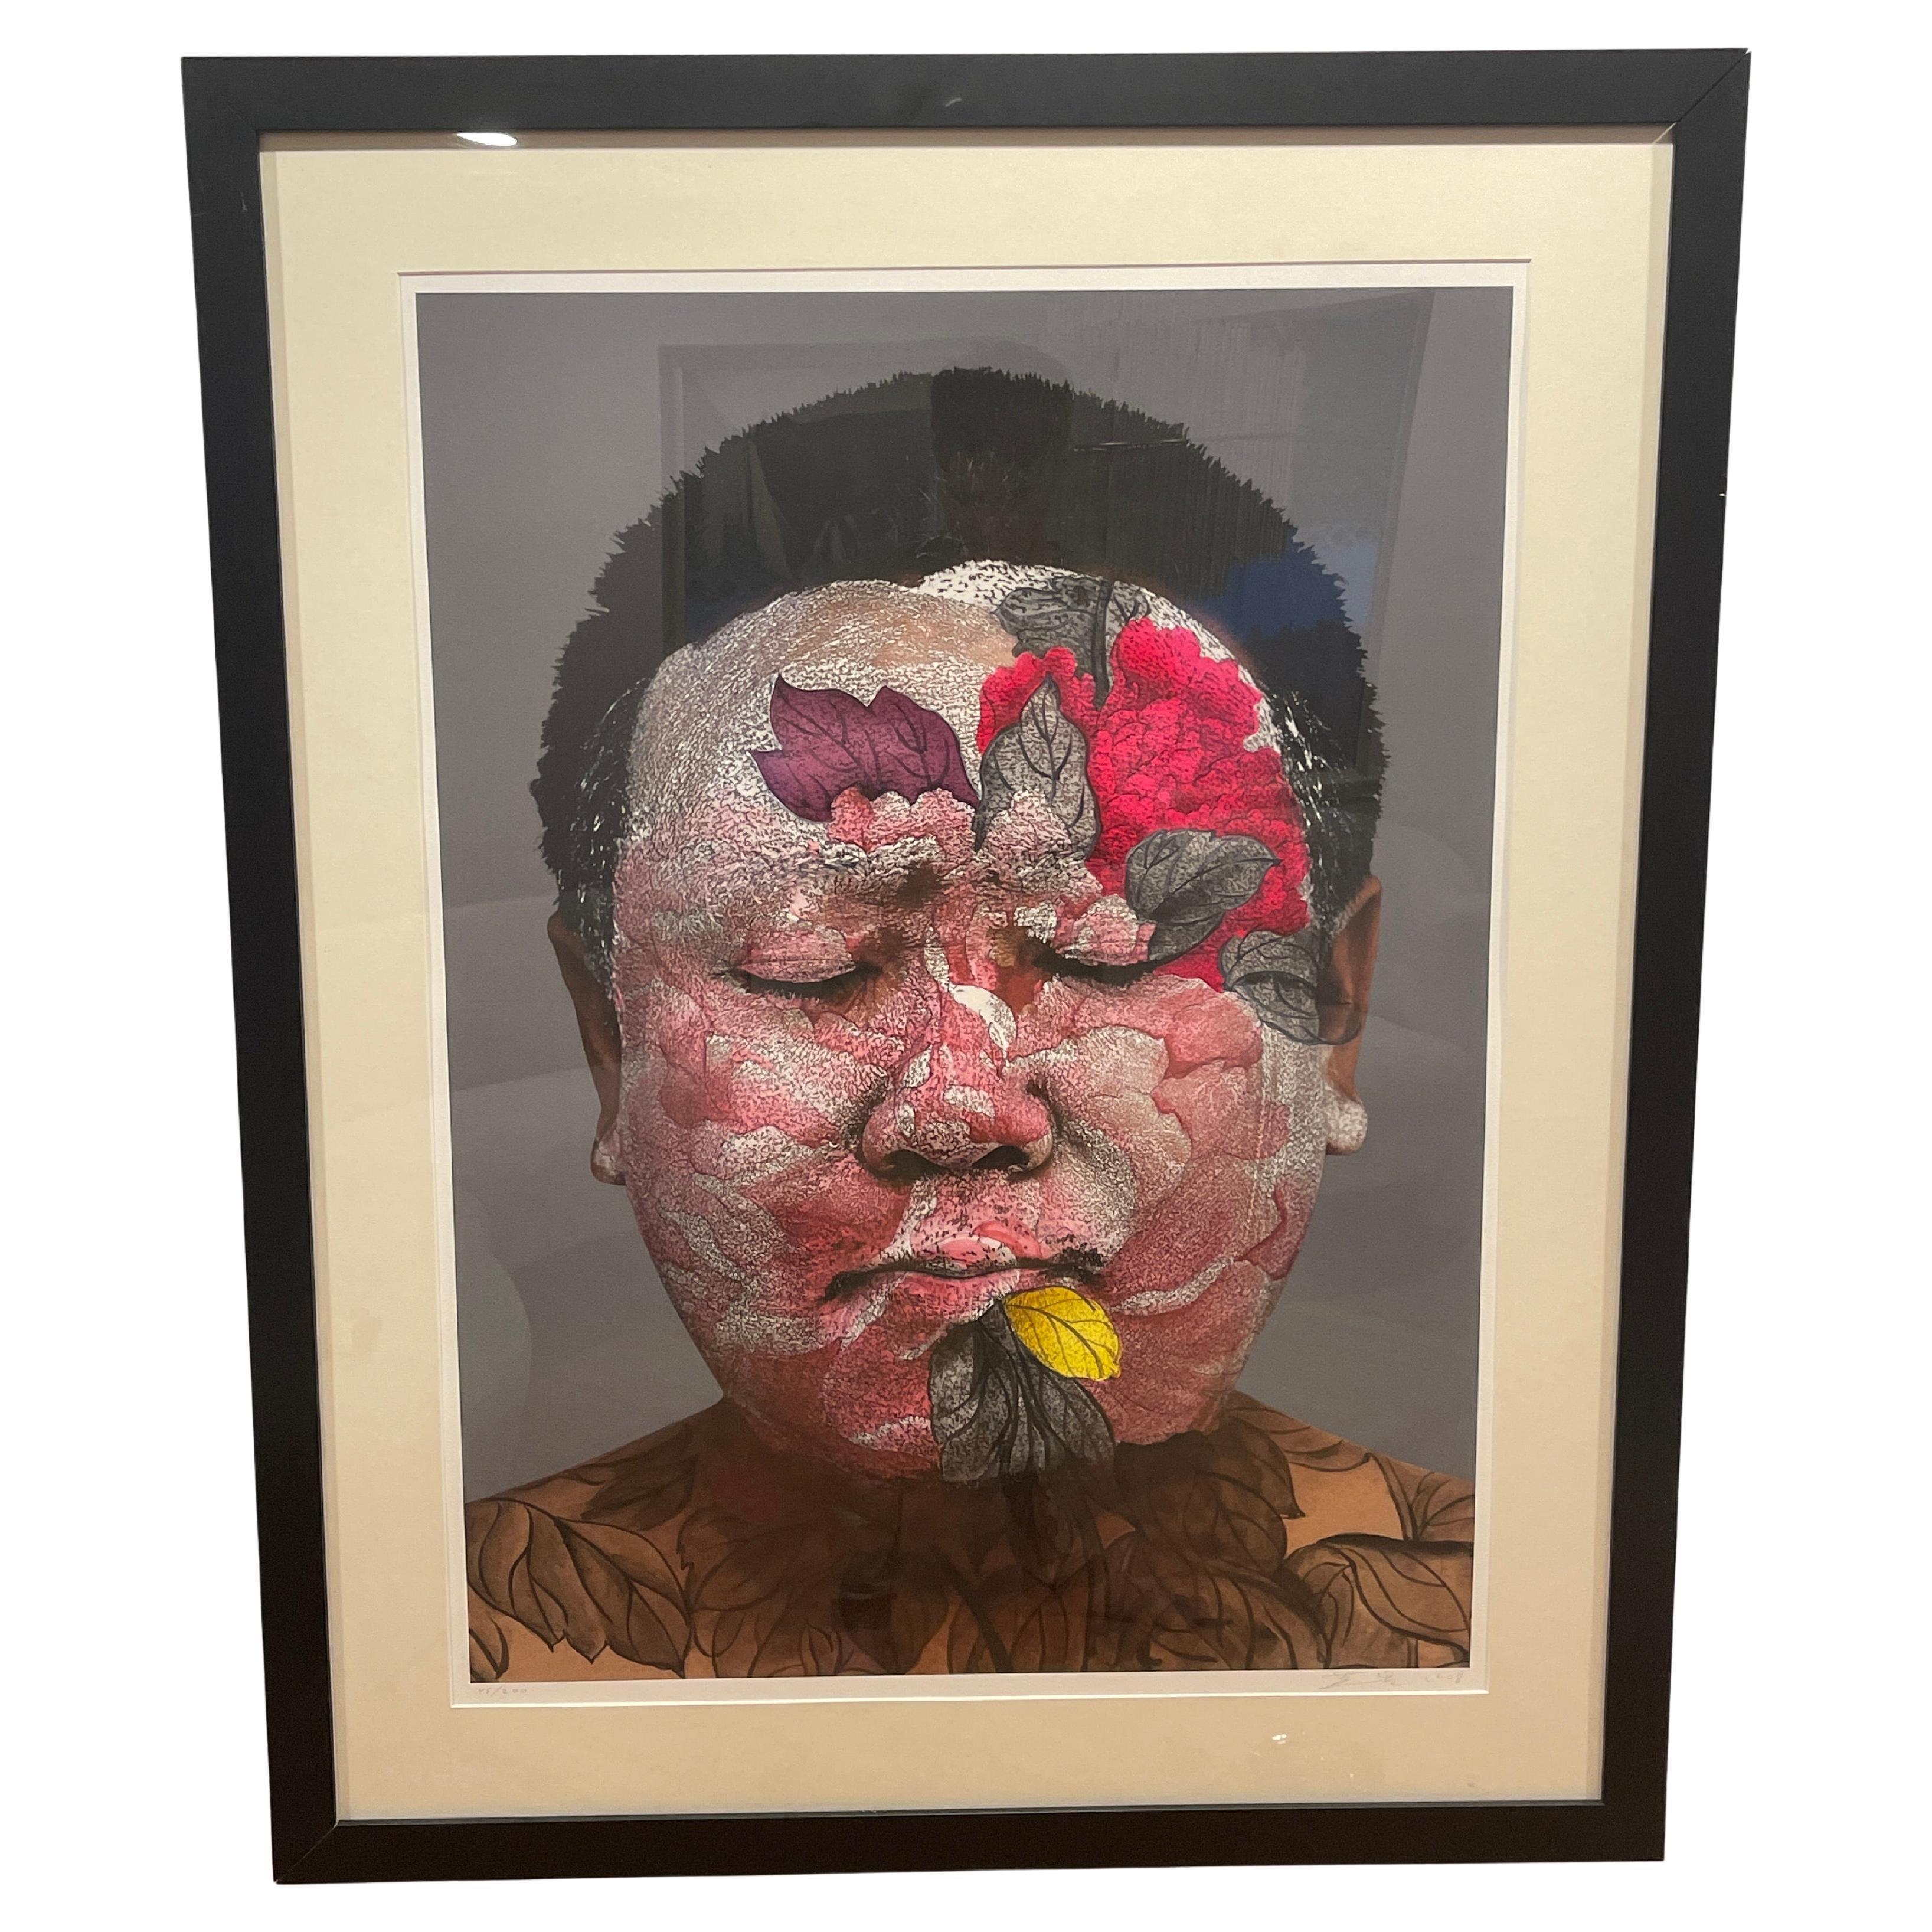 Huang Yan, Selbstporträt, handsigniert 2008